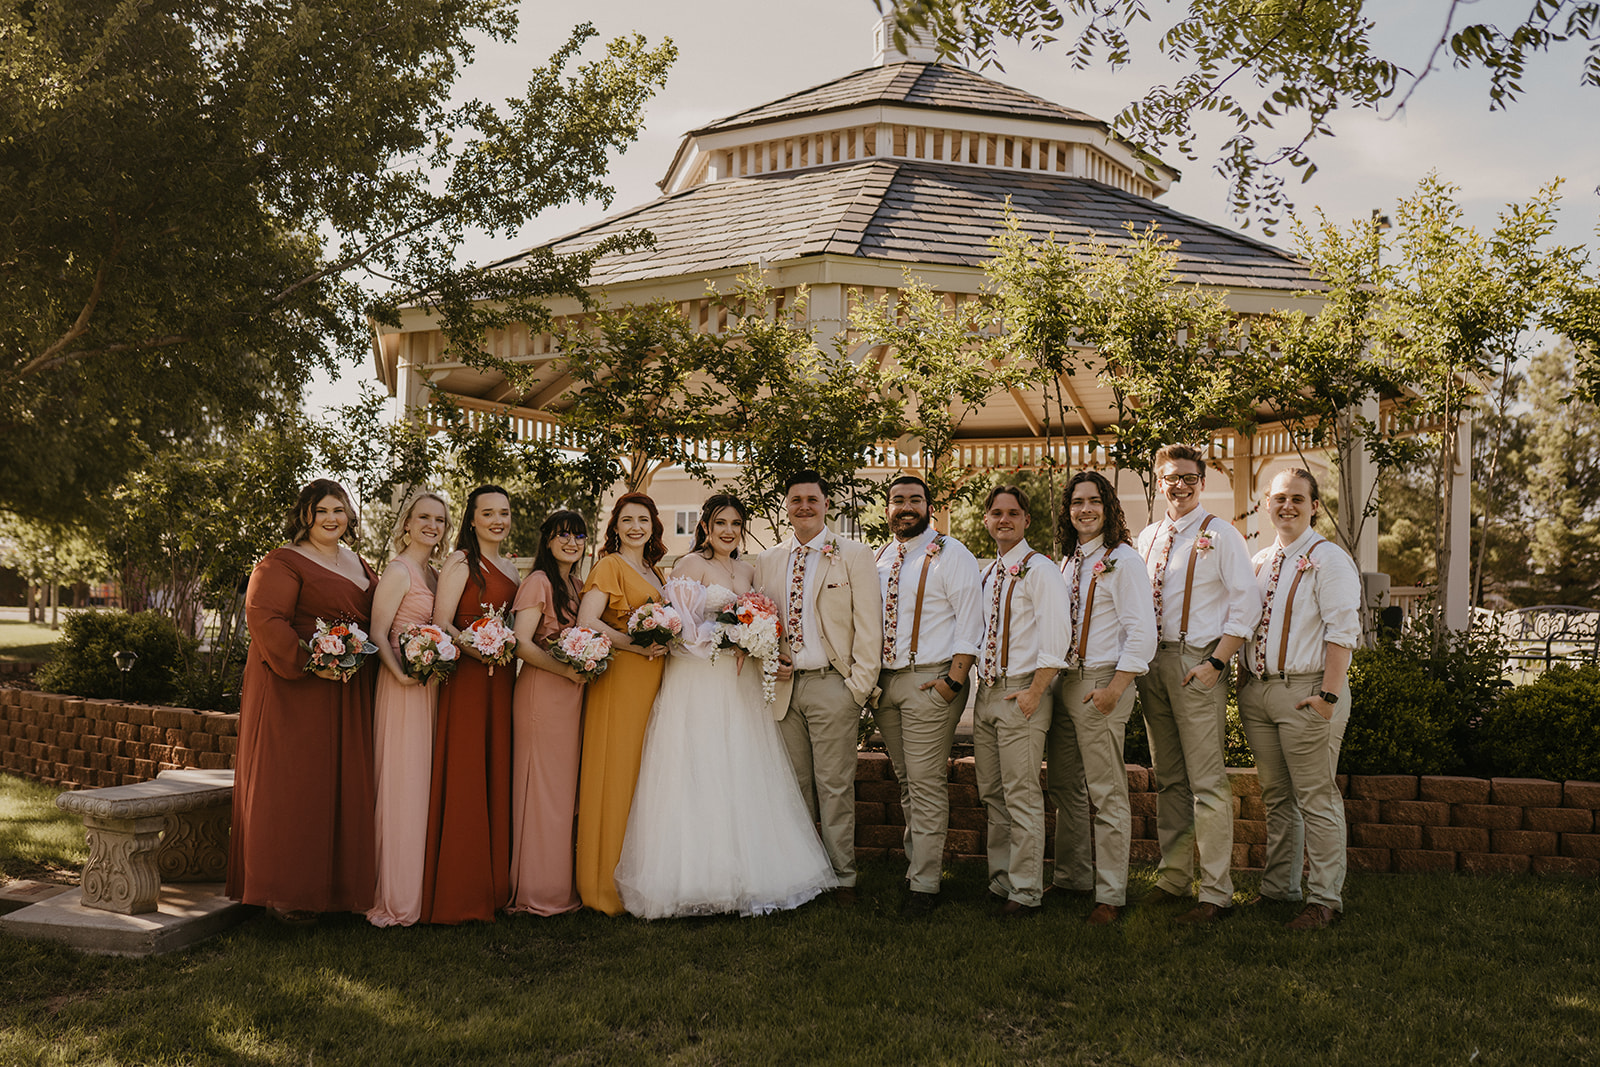 wedding party photos at Lubbock Texas outdoor gazebo wedding 